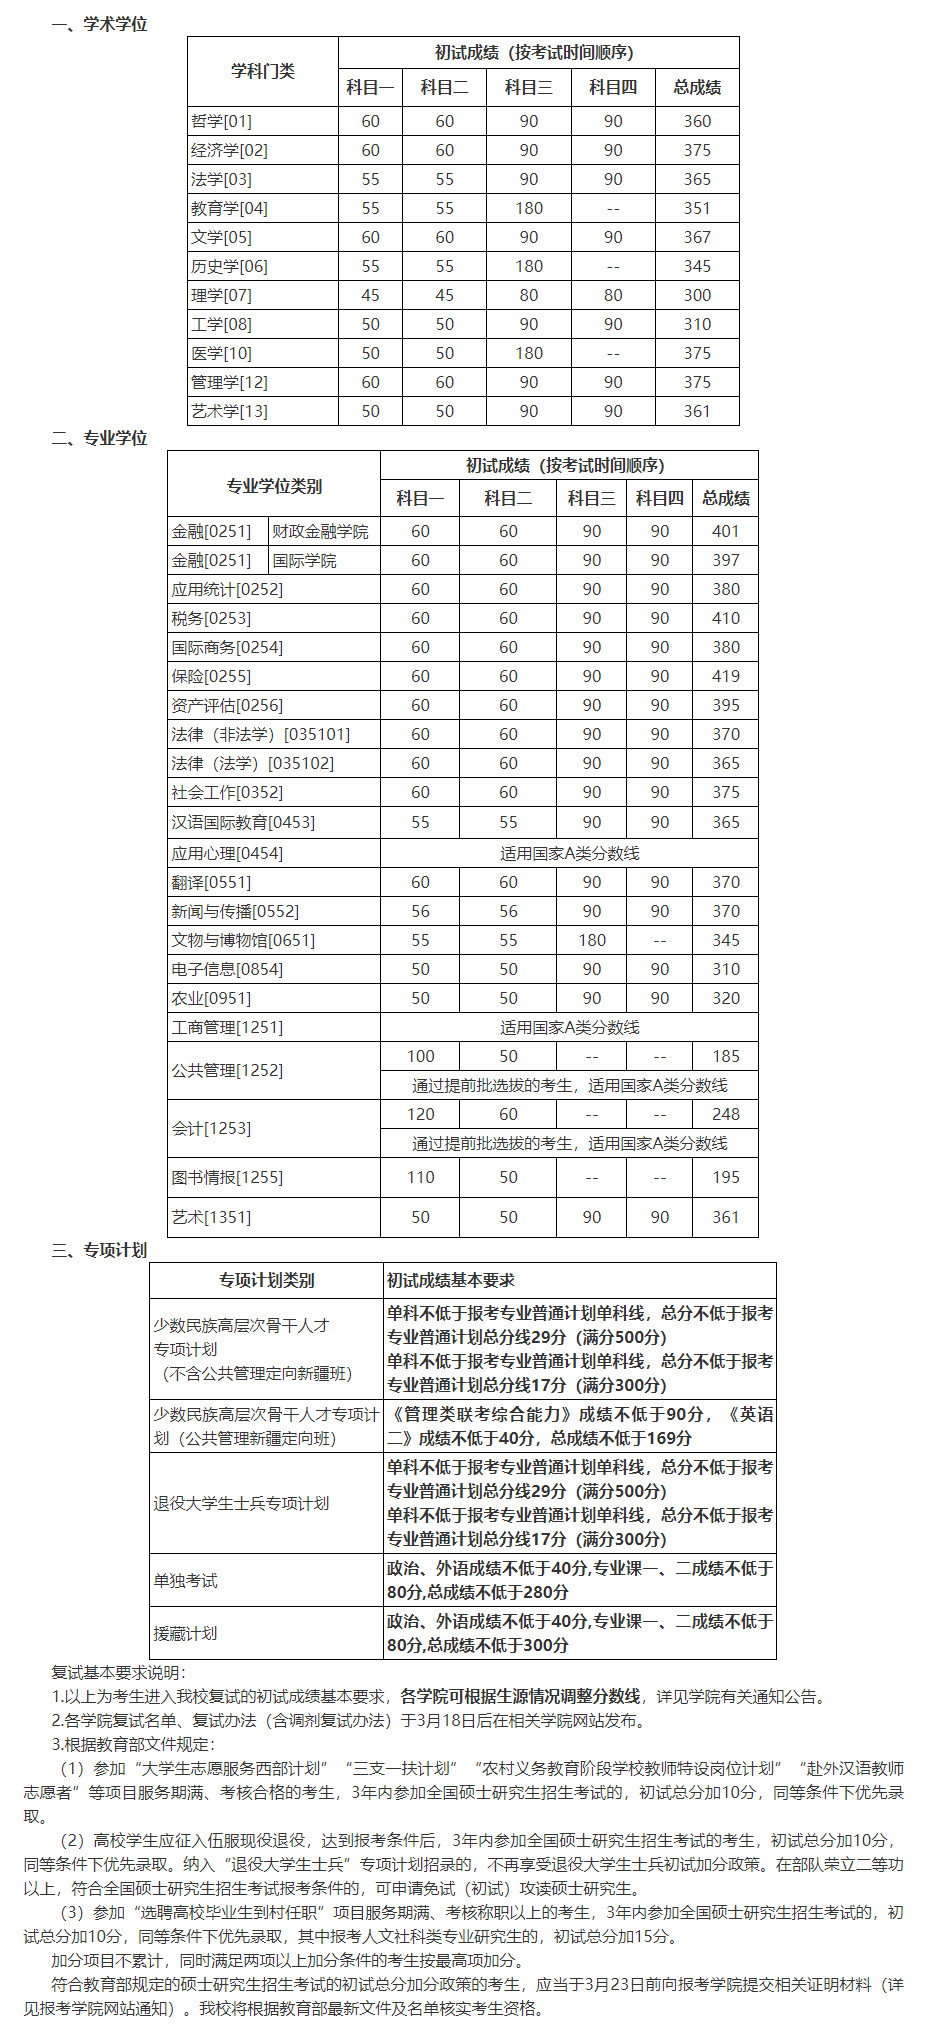 22中国人民大学.jpg